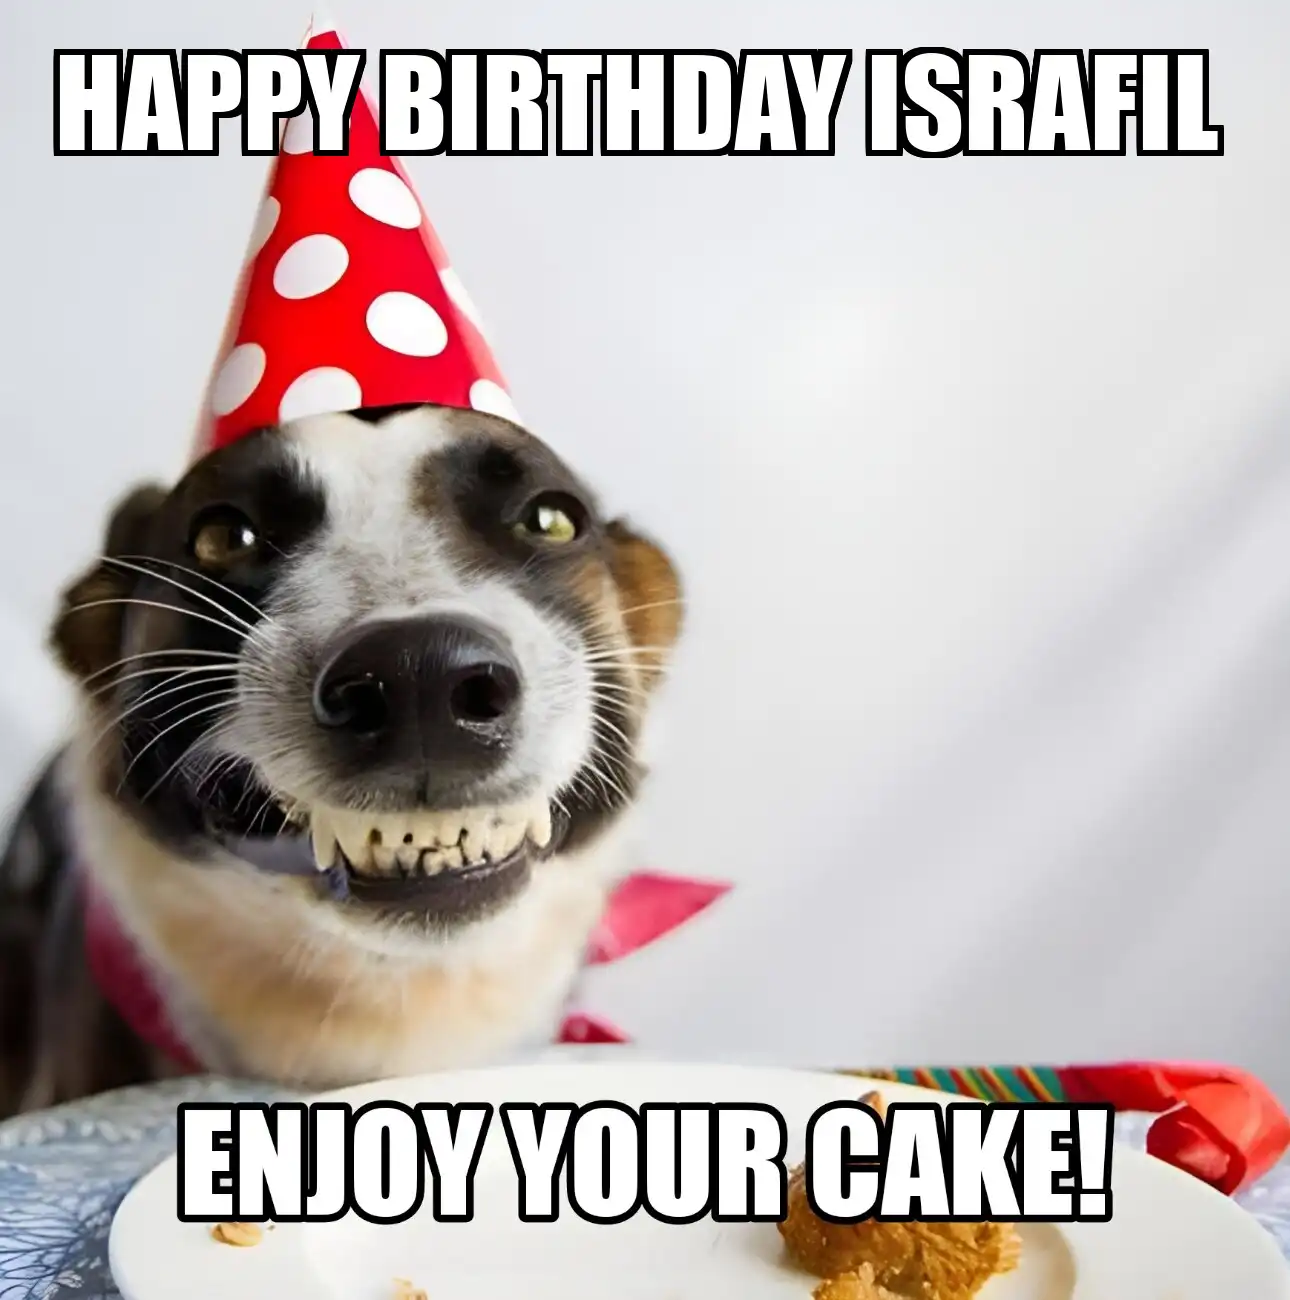 Happy Birthday Israfil Enjoy Your Cake Dog Meme